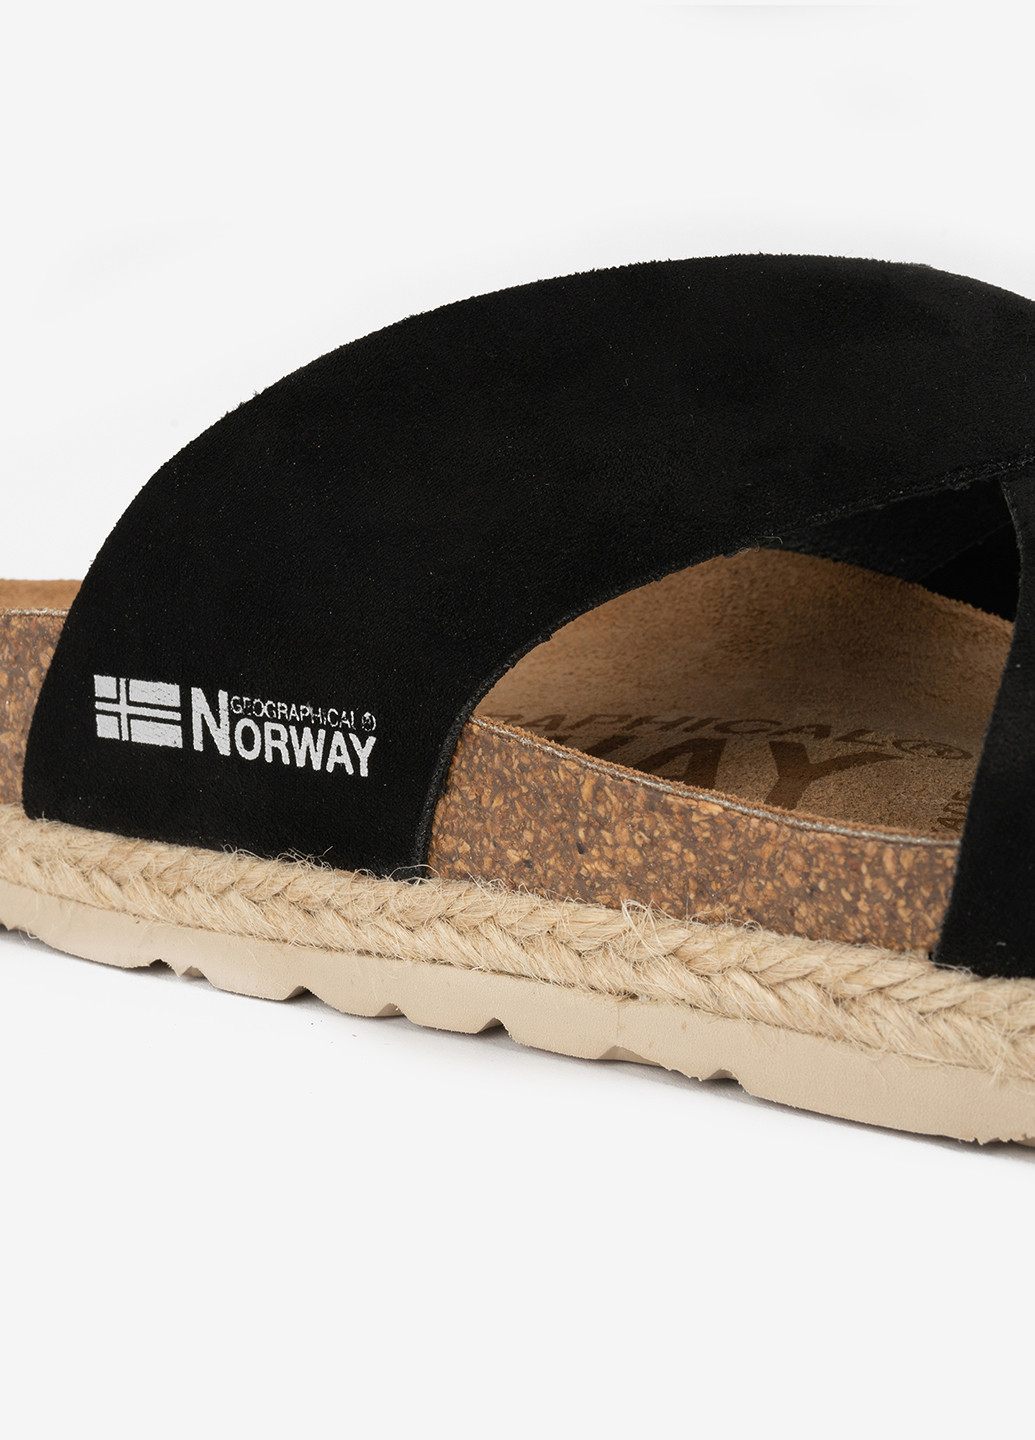 Черные шлепанцы Geographical Norway на плетеной подошве, с логотипом